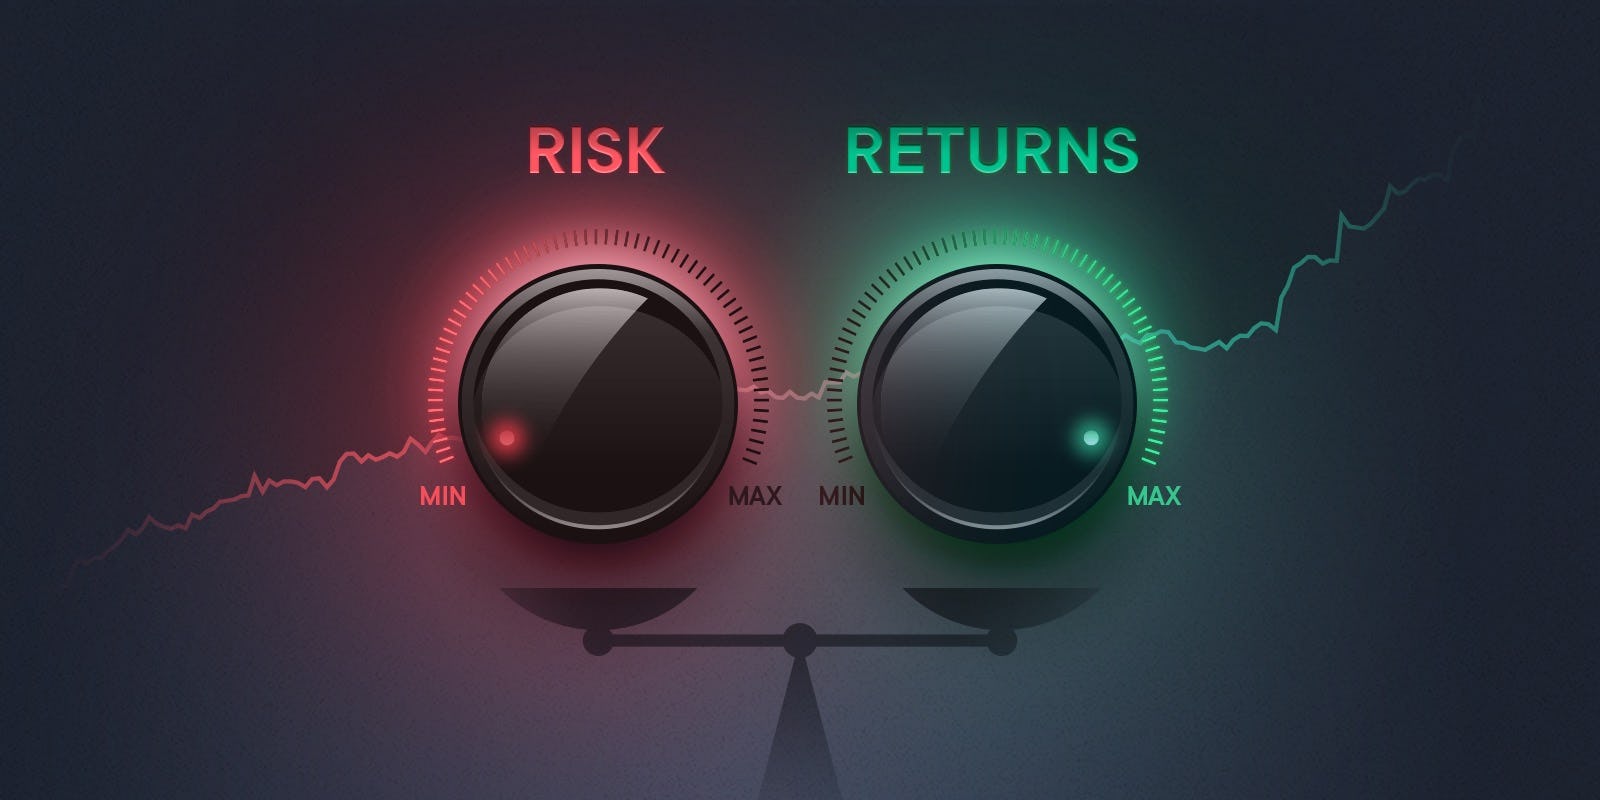 Maximum returns with minimal risk